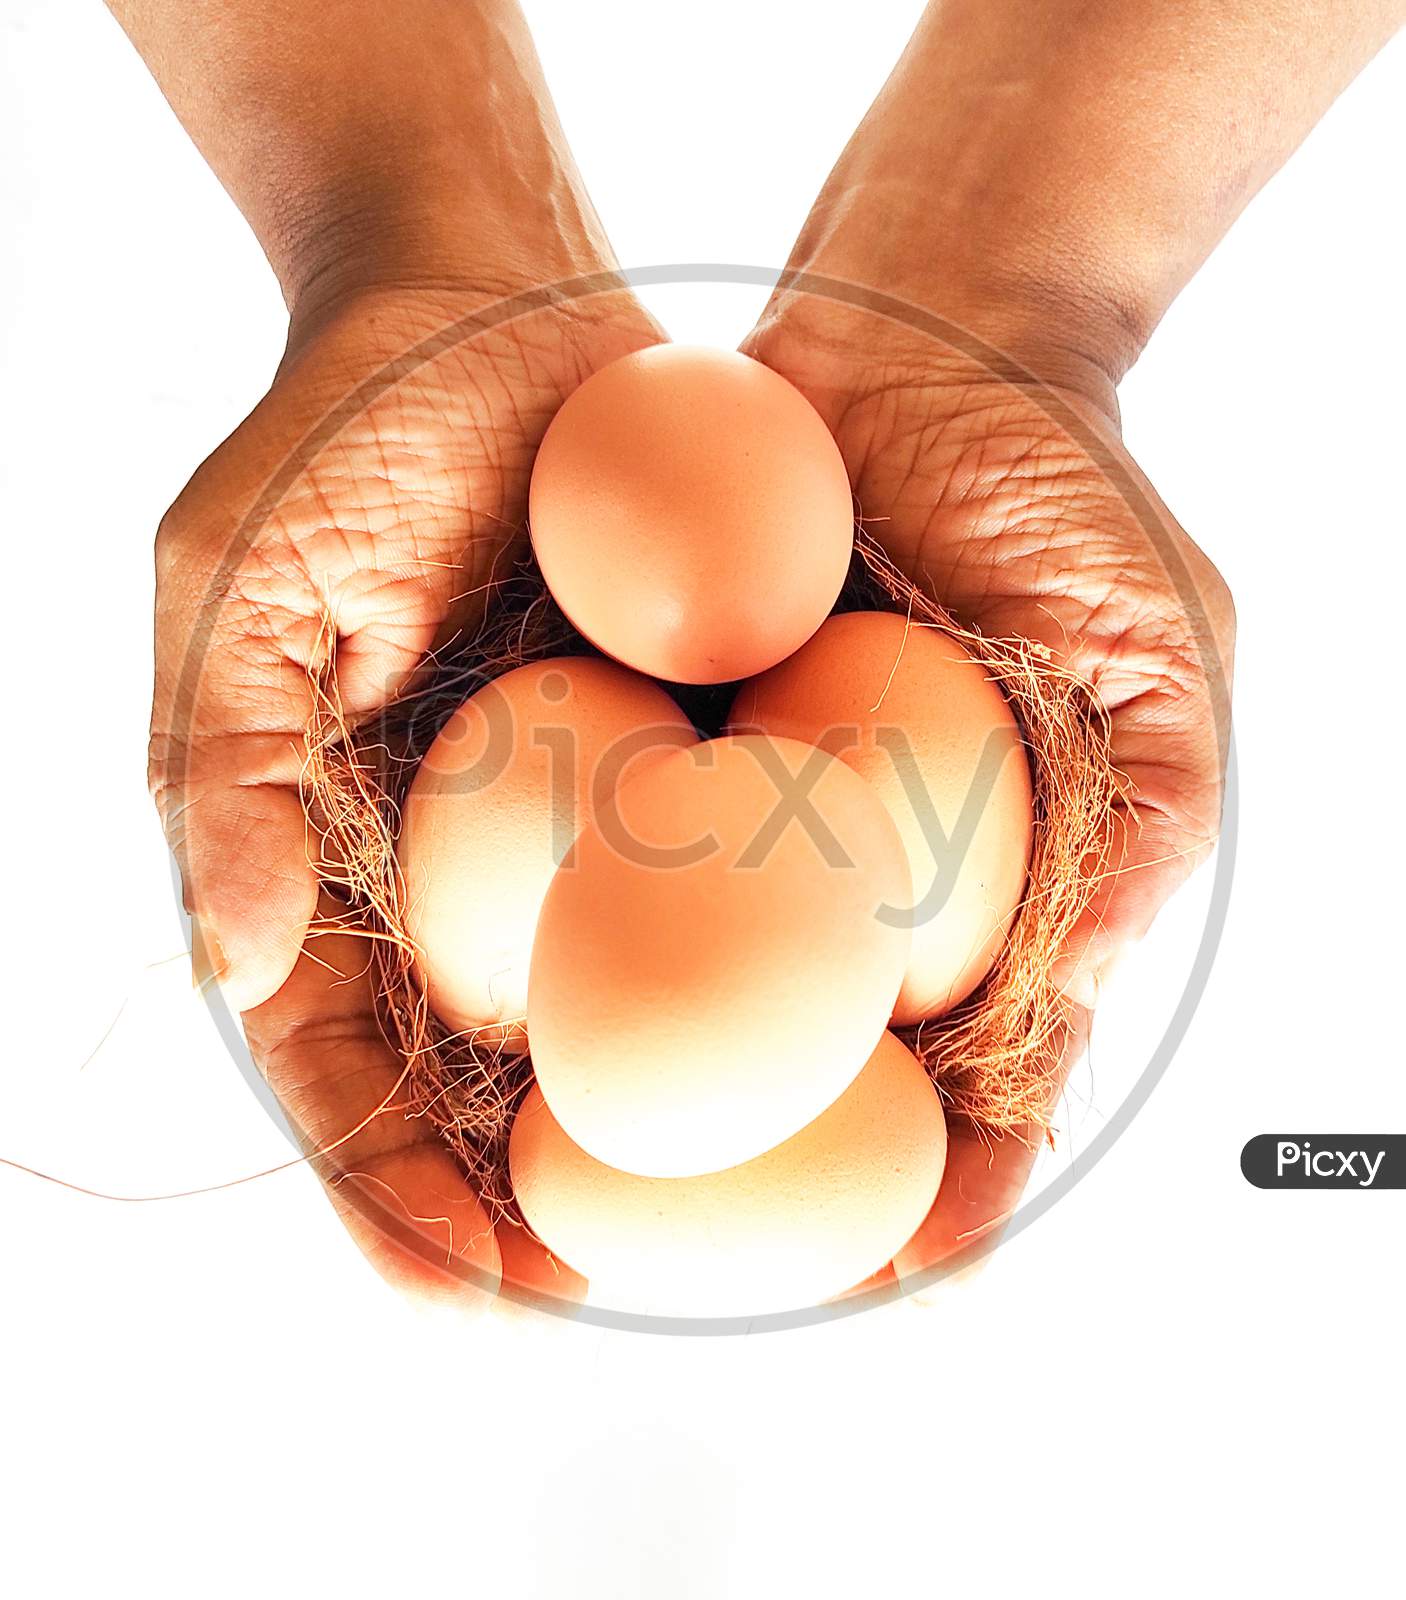 Farm Fresh Eggs - On  Farmers Hand - Concept